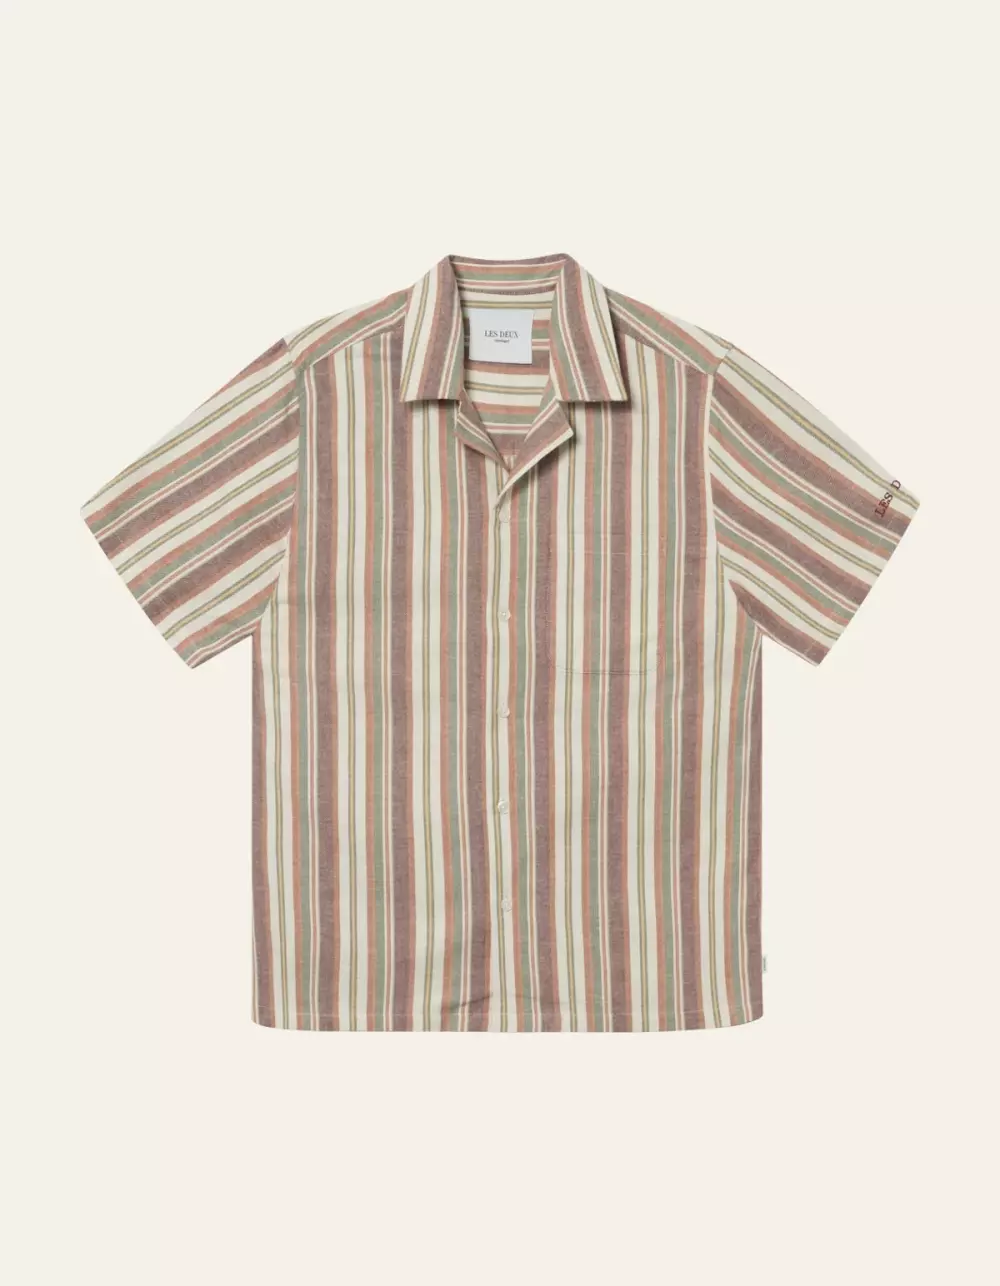 Les Deux - Lawson Stripe SS Shirt - Burnt Red/Ivory, SKJORTER, FRITIDSKJORTER, LES DEUX, LDM401057_634215, Shirt, HERRE, Burnt Red/Ivory